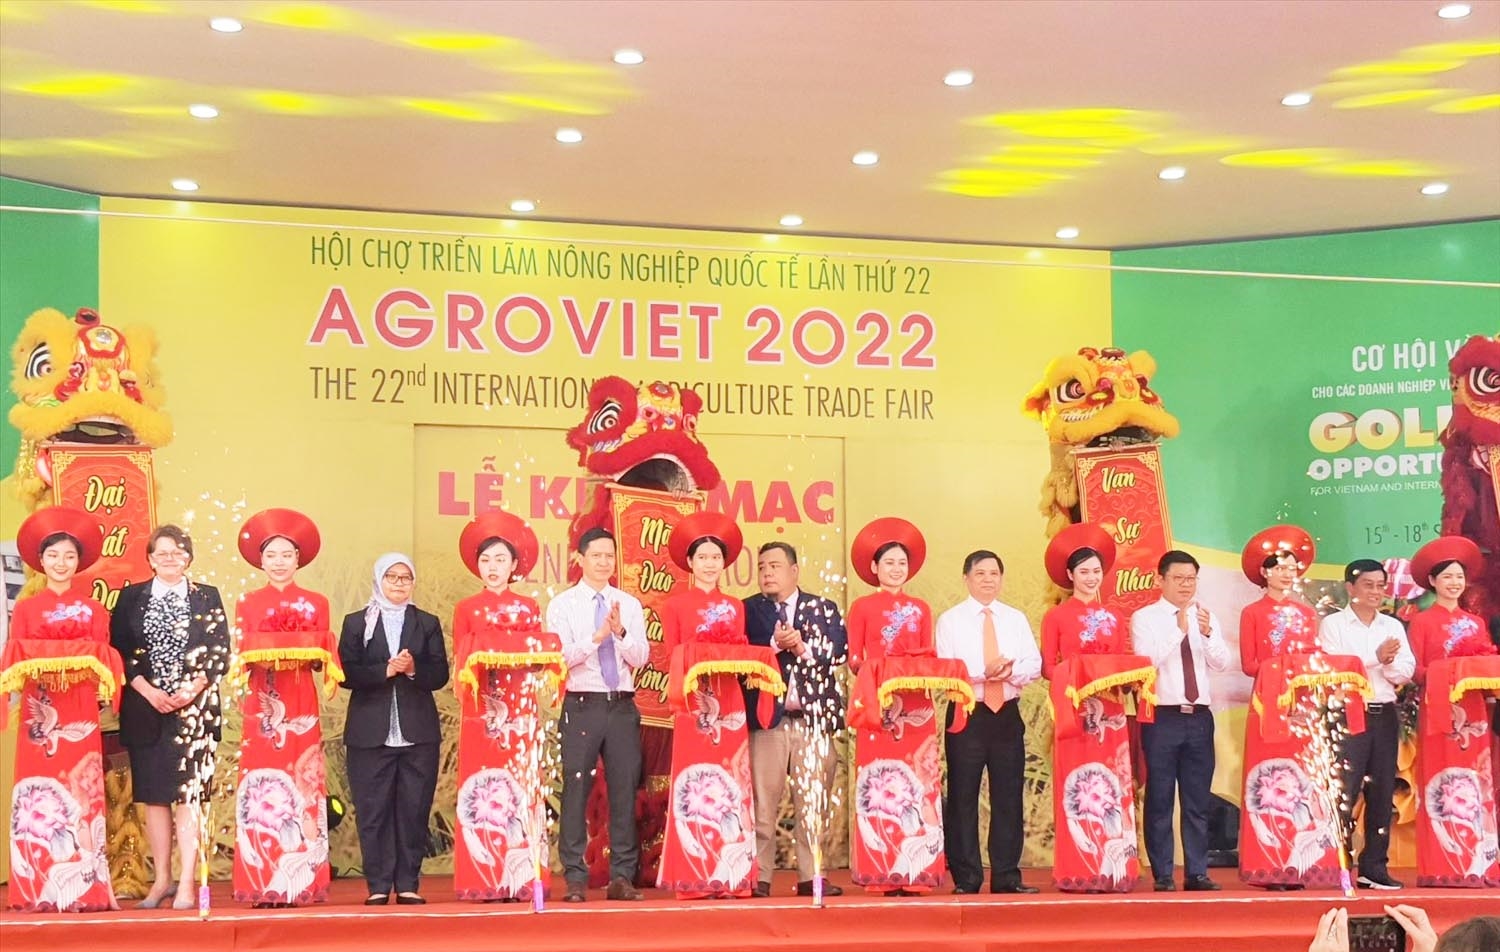 Khai mạc Hội chợ Triển lãm Nông nghiệp Quốc tế lần thứ 22 - AgroViet 2022